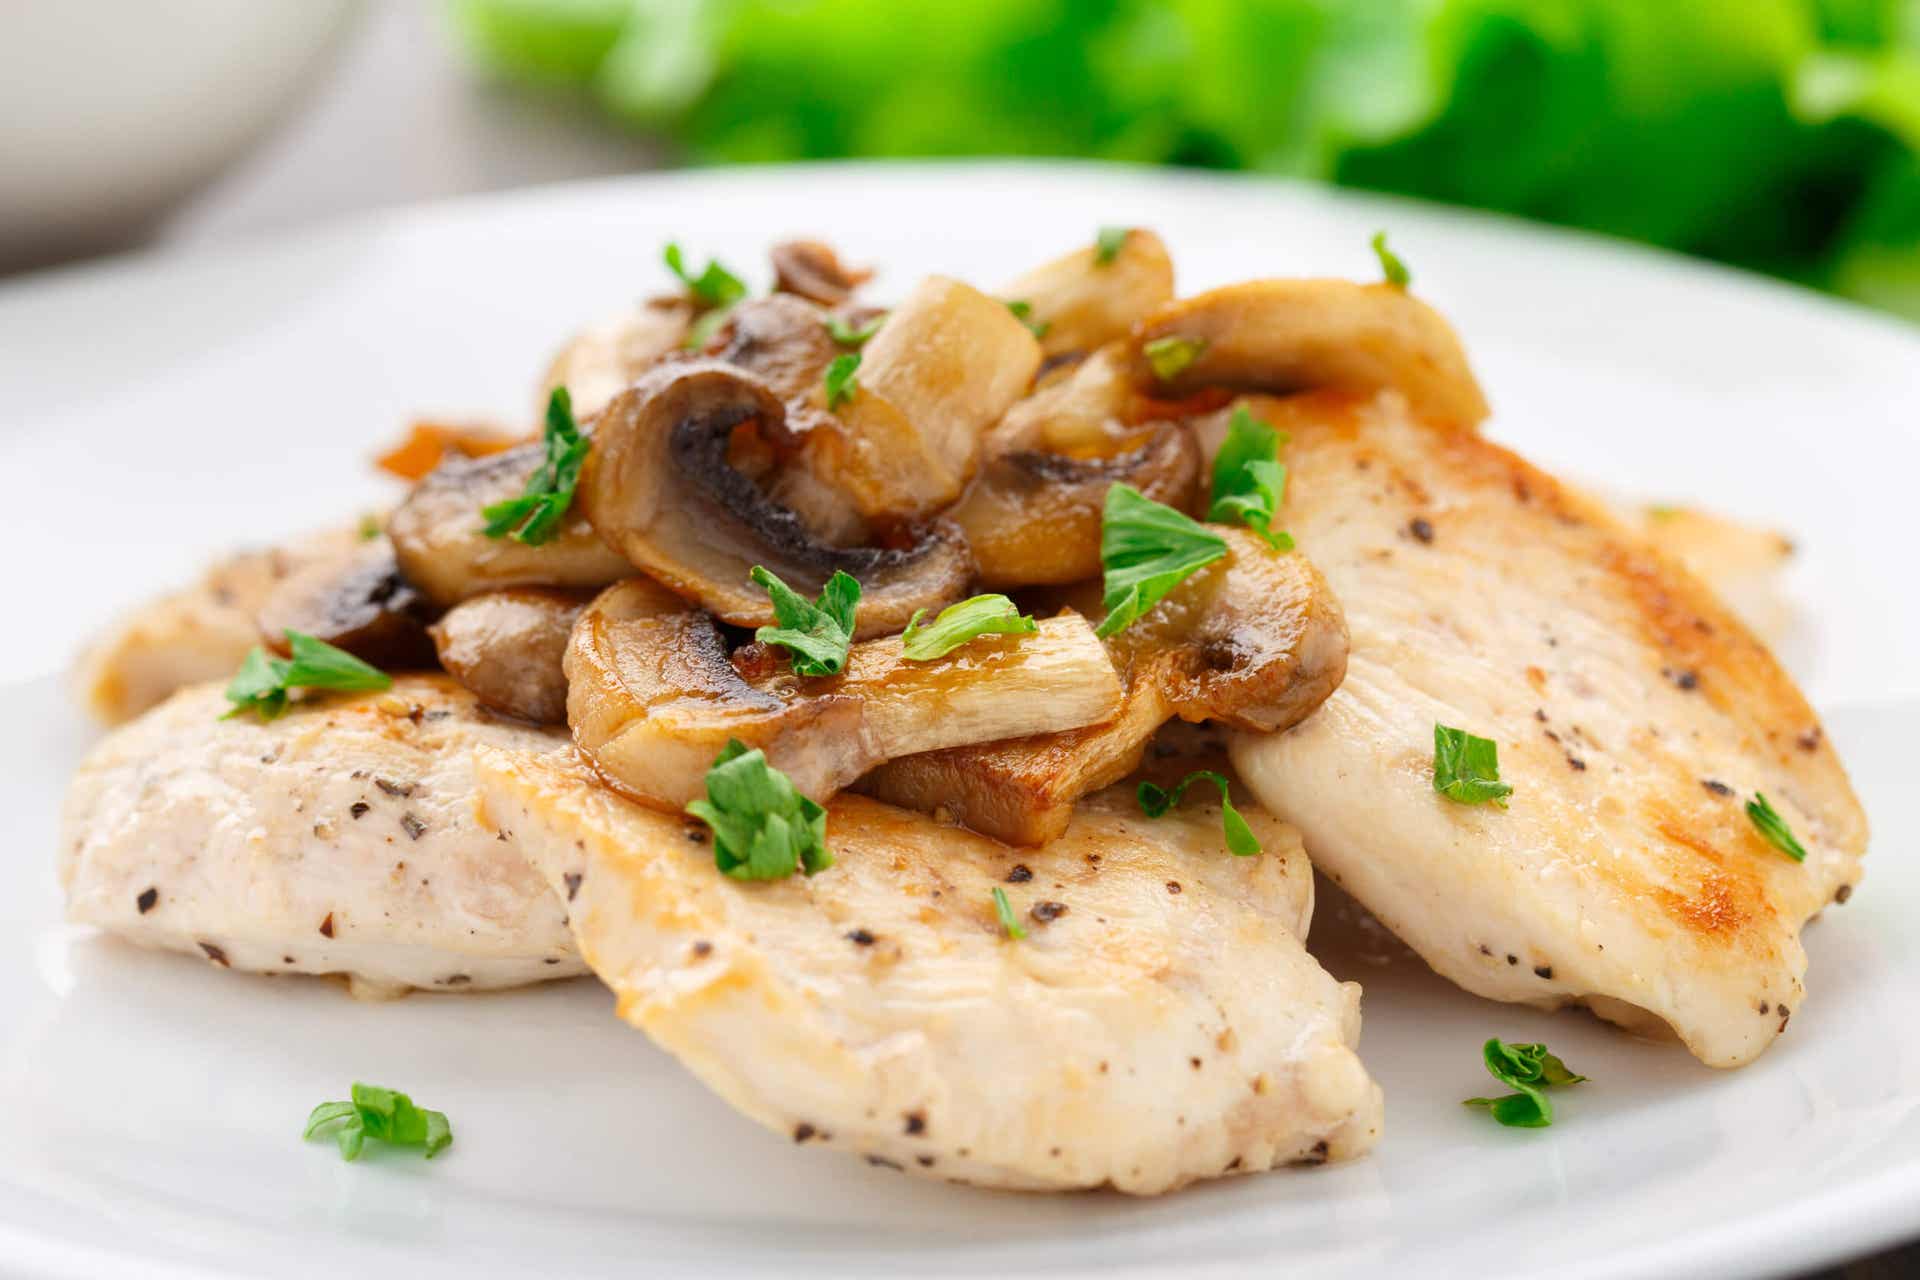 Petto di pollo con panna e funghi può usare vari condimenti